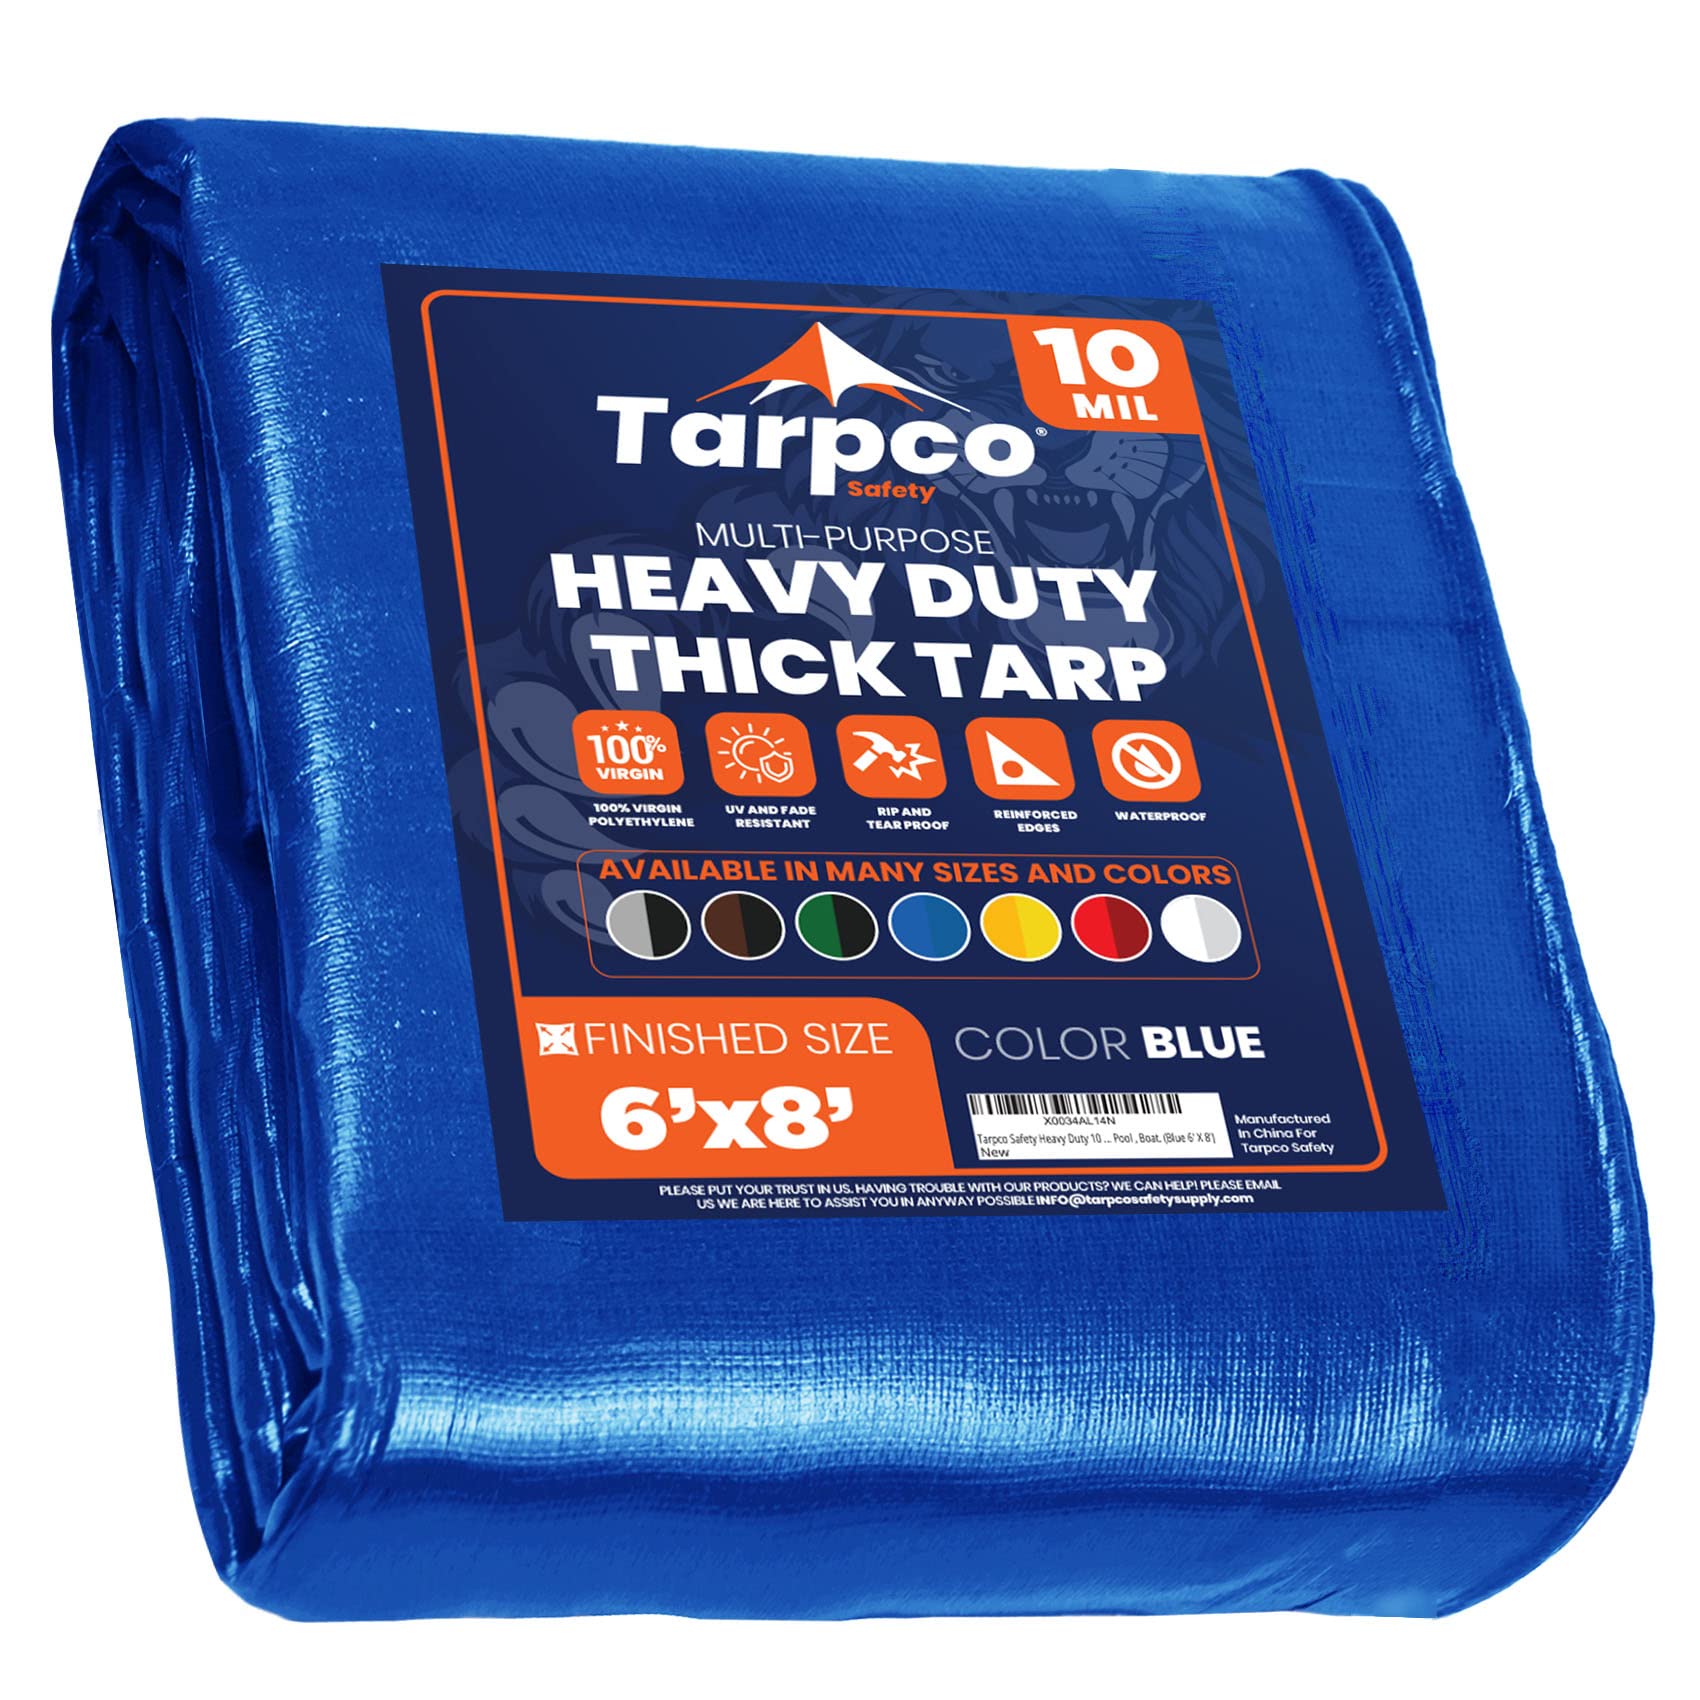 Tarpco Safety 耐久性の高いタープカバー、防水、耐紫外線、引き裂き防止、エッジが強化されたポリター...